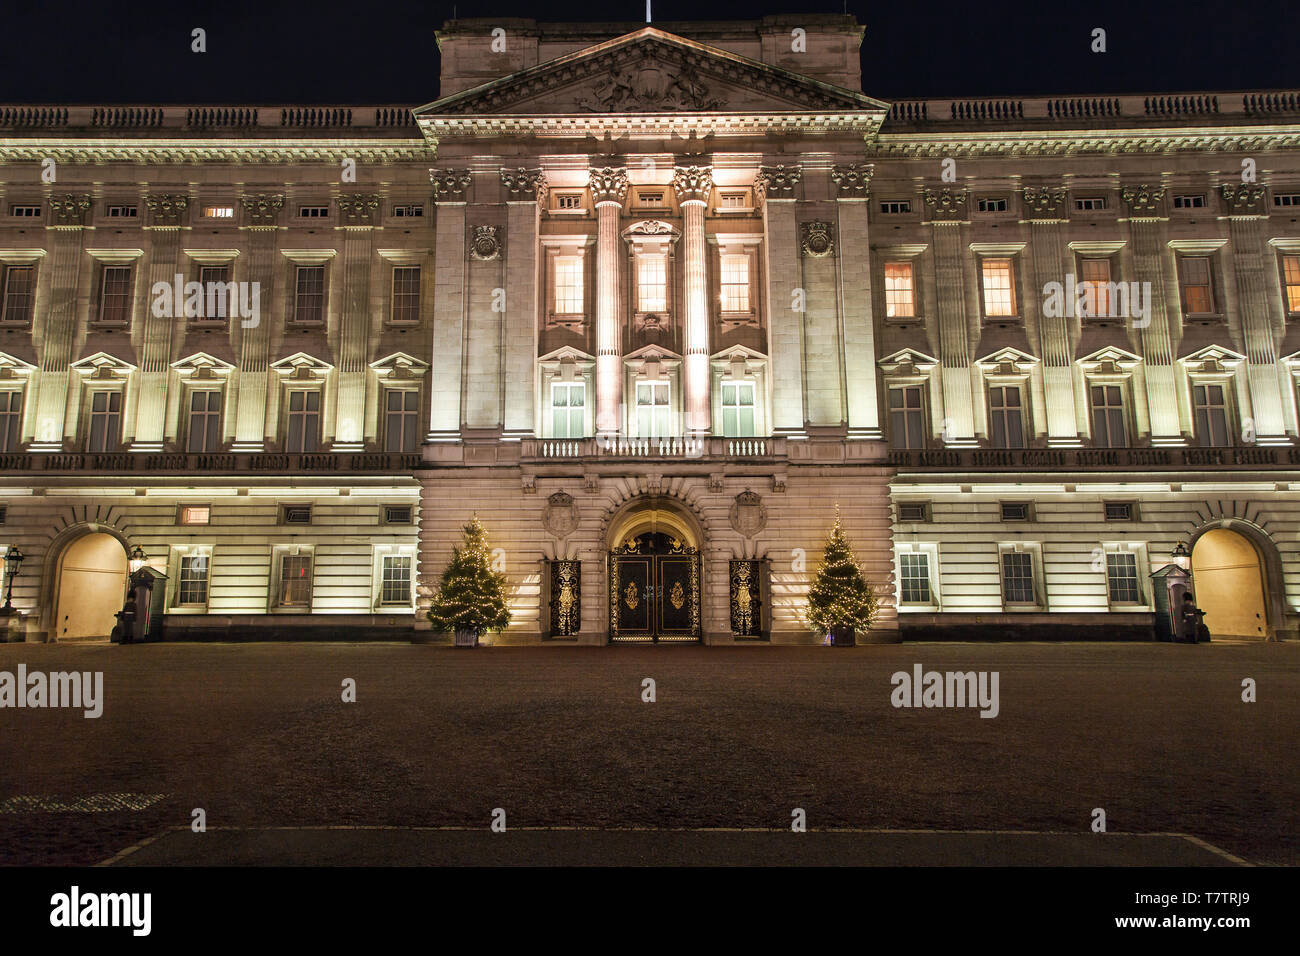 Nacht Blick auf die Fassade des Buckingham Palast bei Nacht, London, Vereinigtes Königreich. Stockfoto